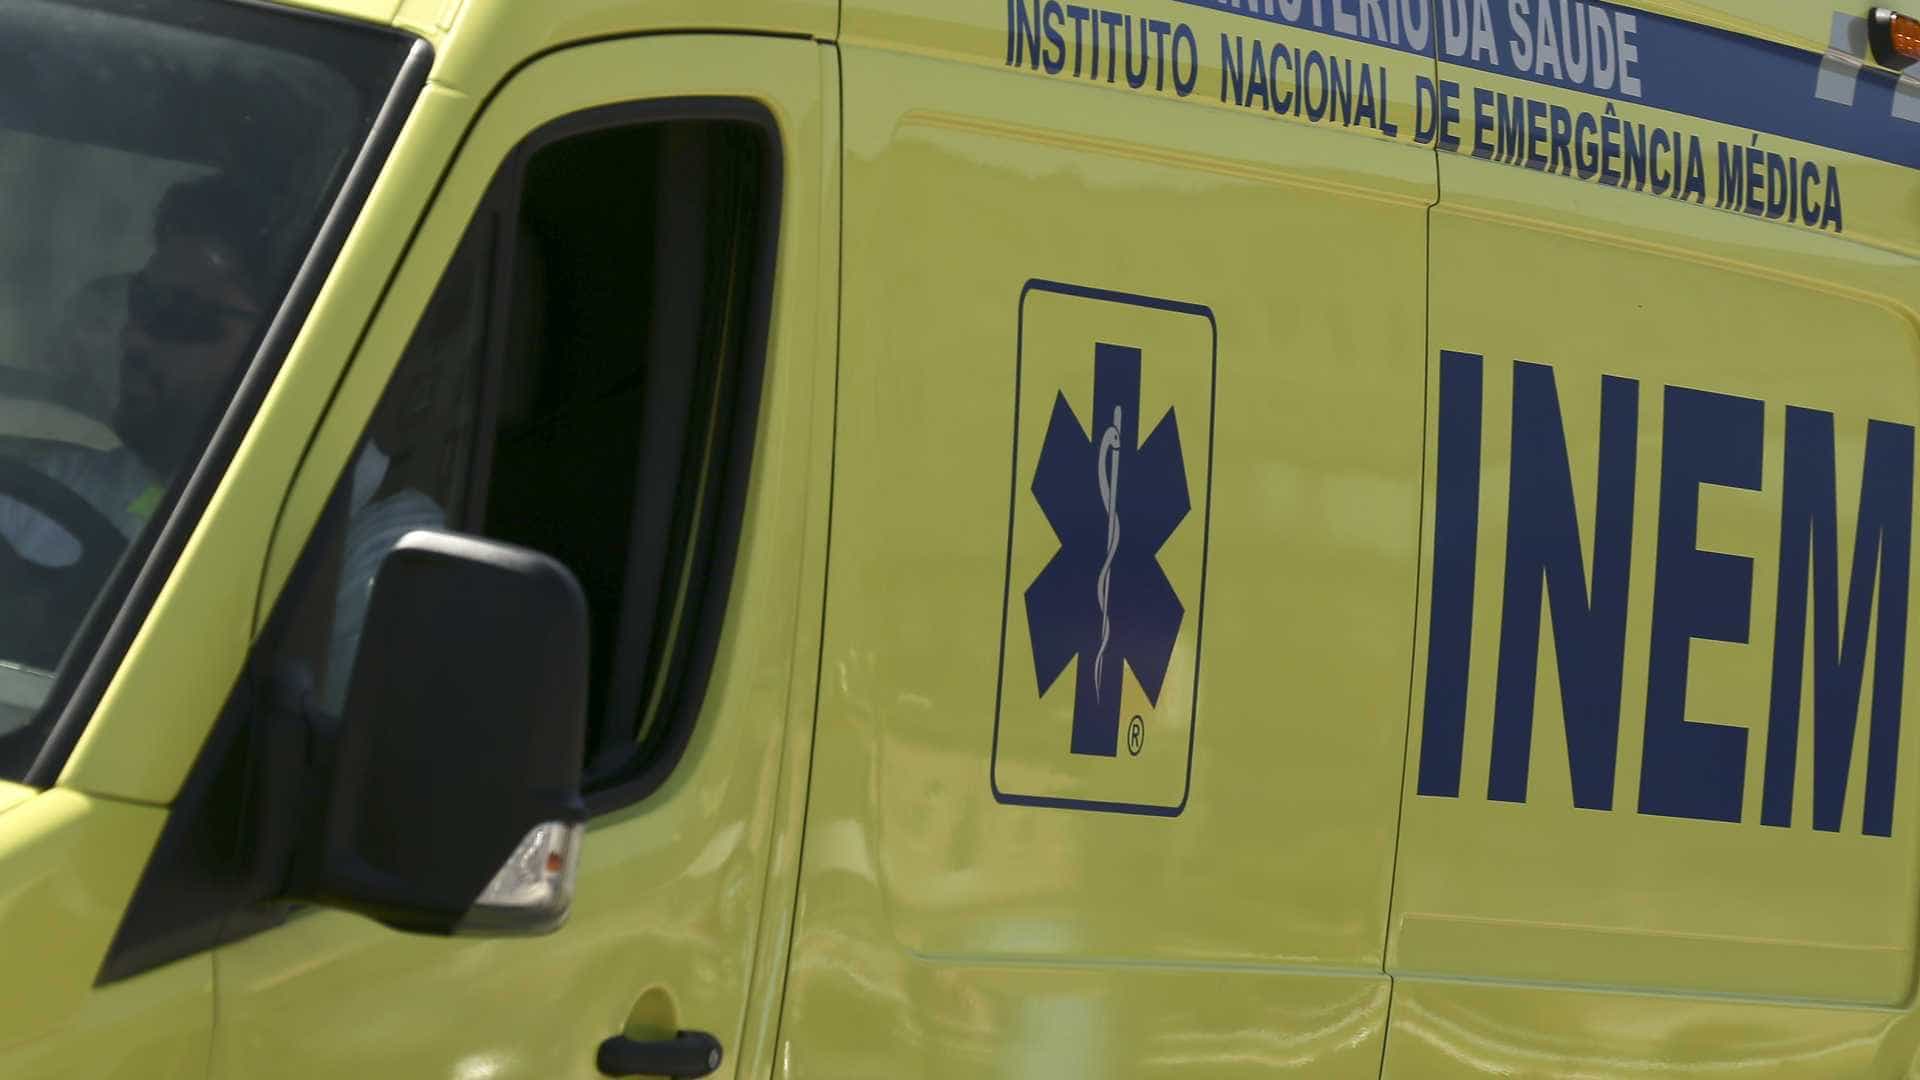 Condutor morre depois de colidir com uma ambulância - BOM DIA Luxemburgo